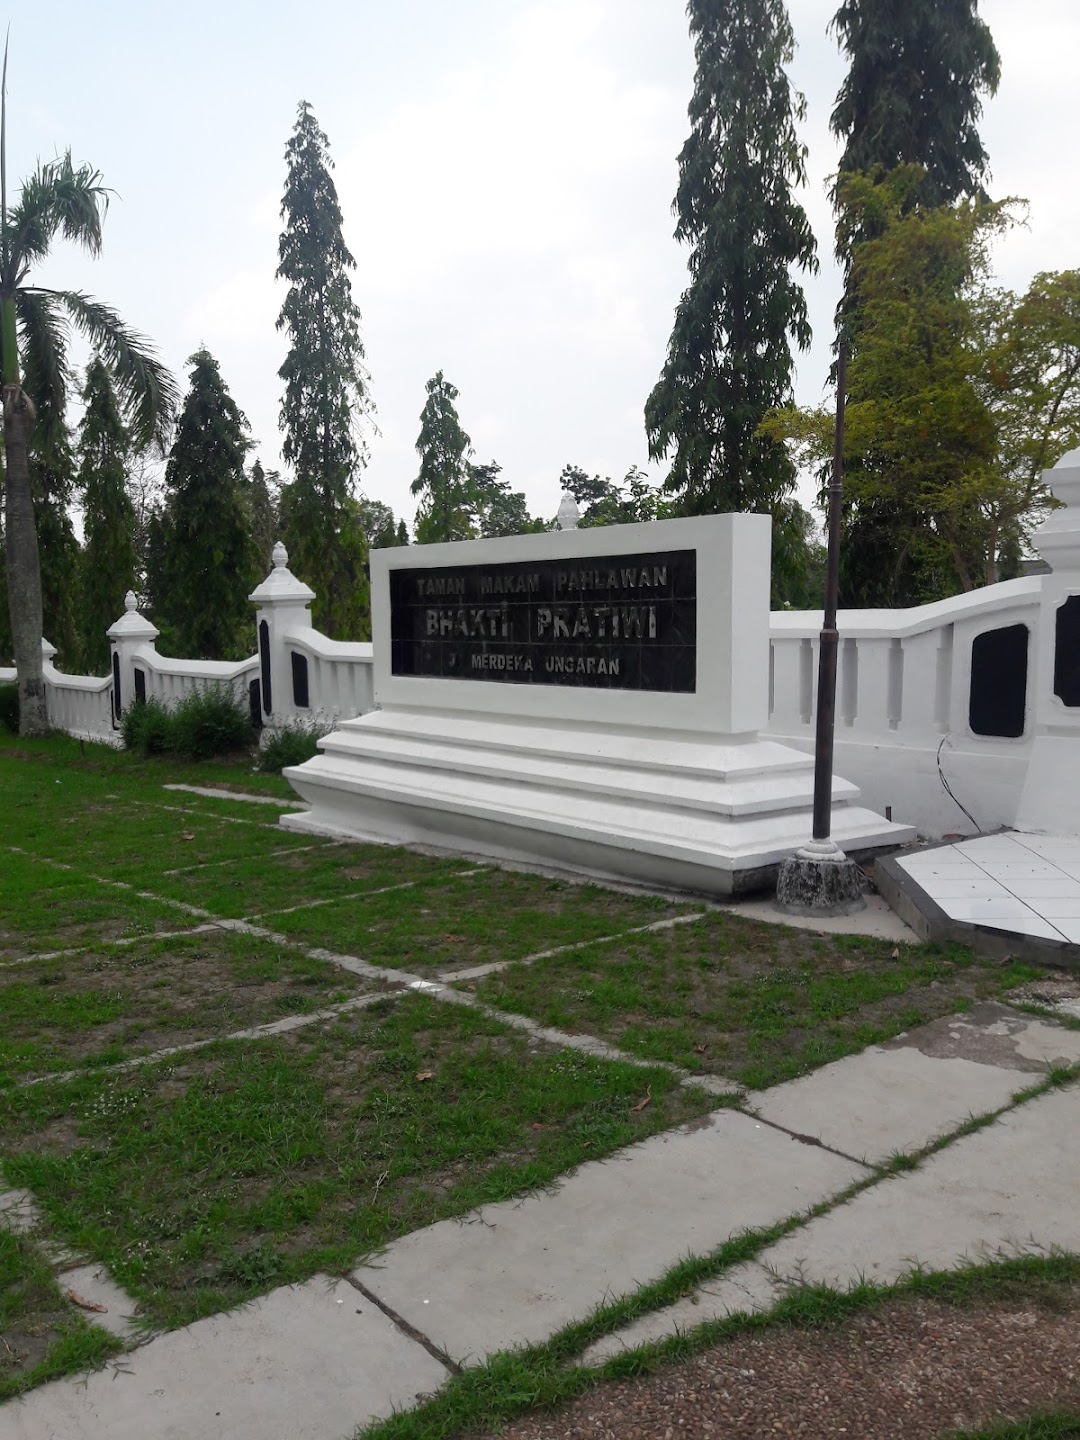 Taman Makam Pahlawan Bhakti Pratiwi